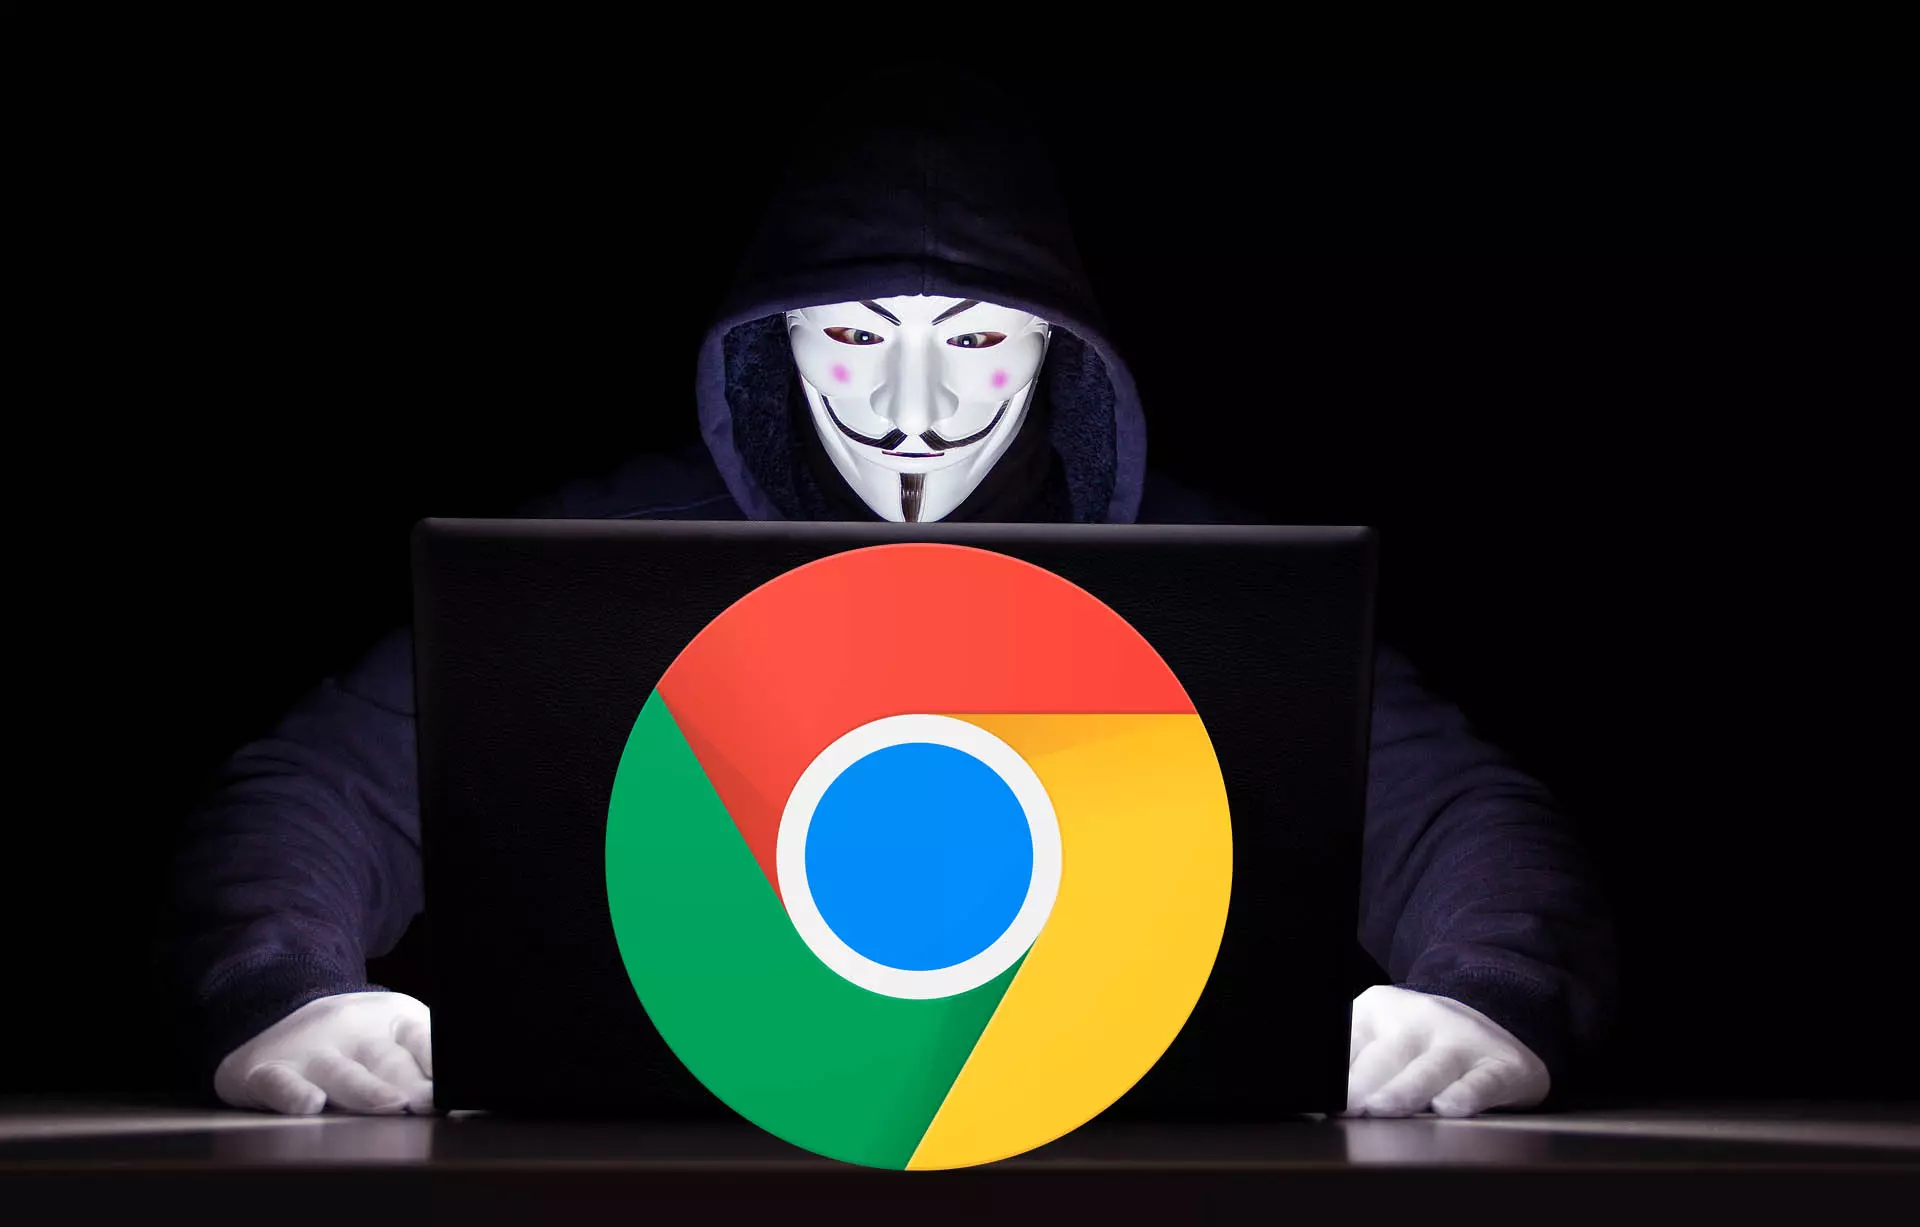 Почему в браузере Chrome больше недостатков безопасности, чем раньше